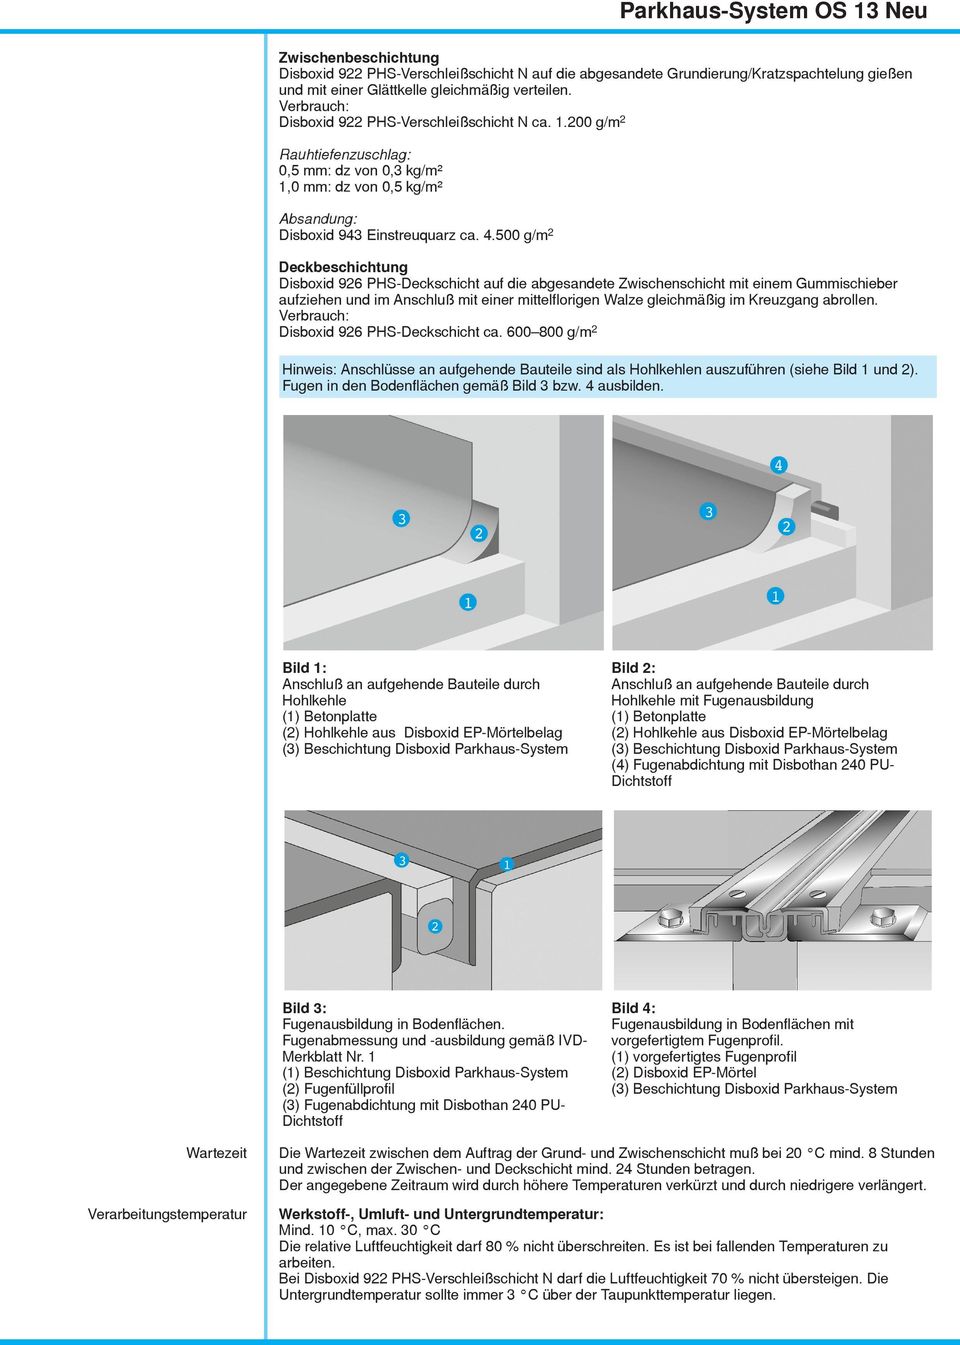 600 800 g/m2 Hinweis: Anschlüsse an aufgehende Bauteile sind als Hohlkehlen auszuführen (siehe Bild 1 und 2). Fugen in den Bodenflächen gemäß Bild 3 bzw. 4 ausbilden.